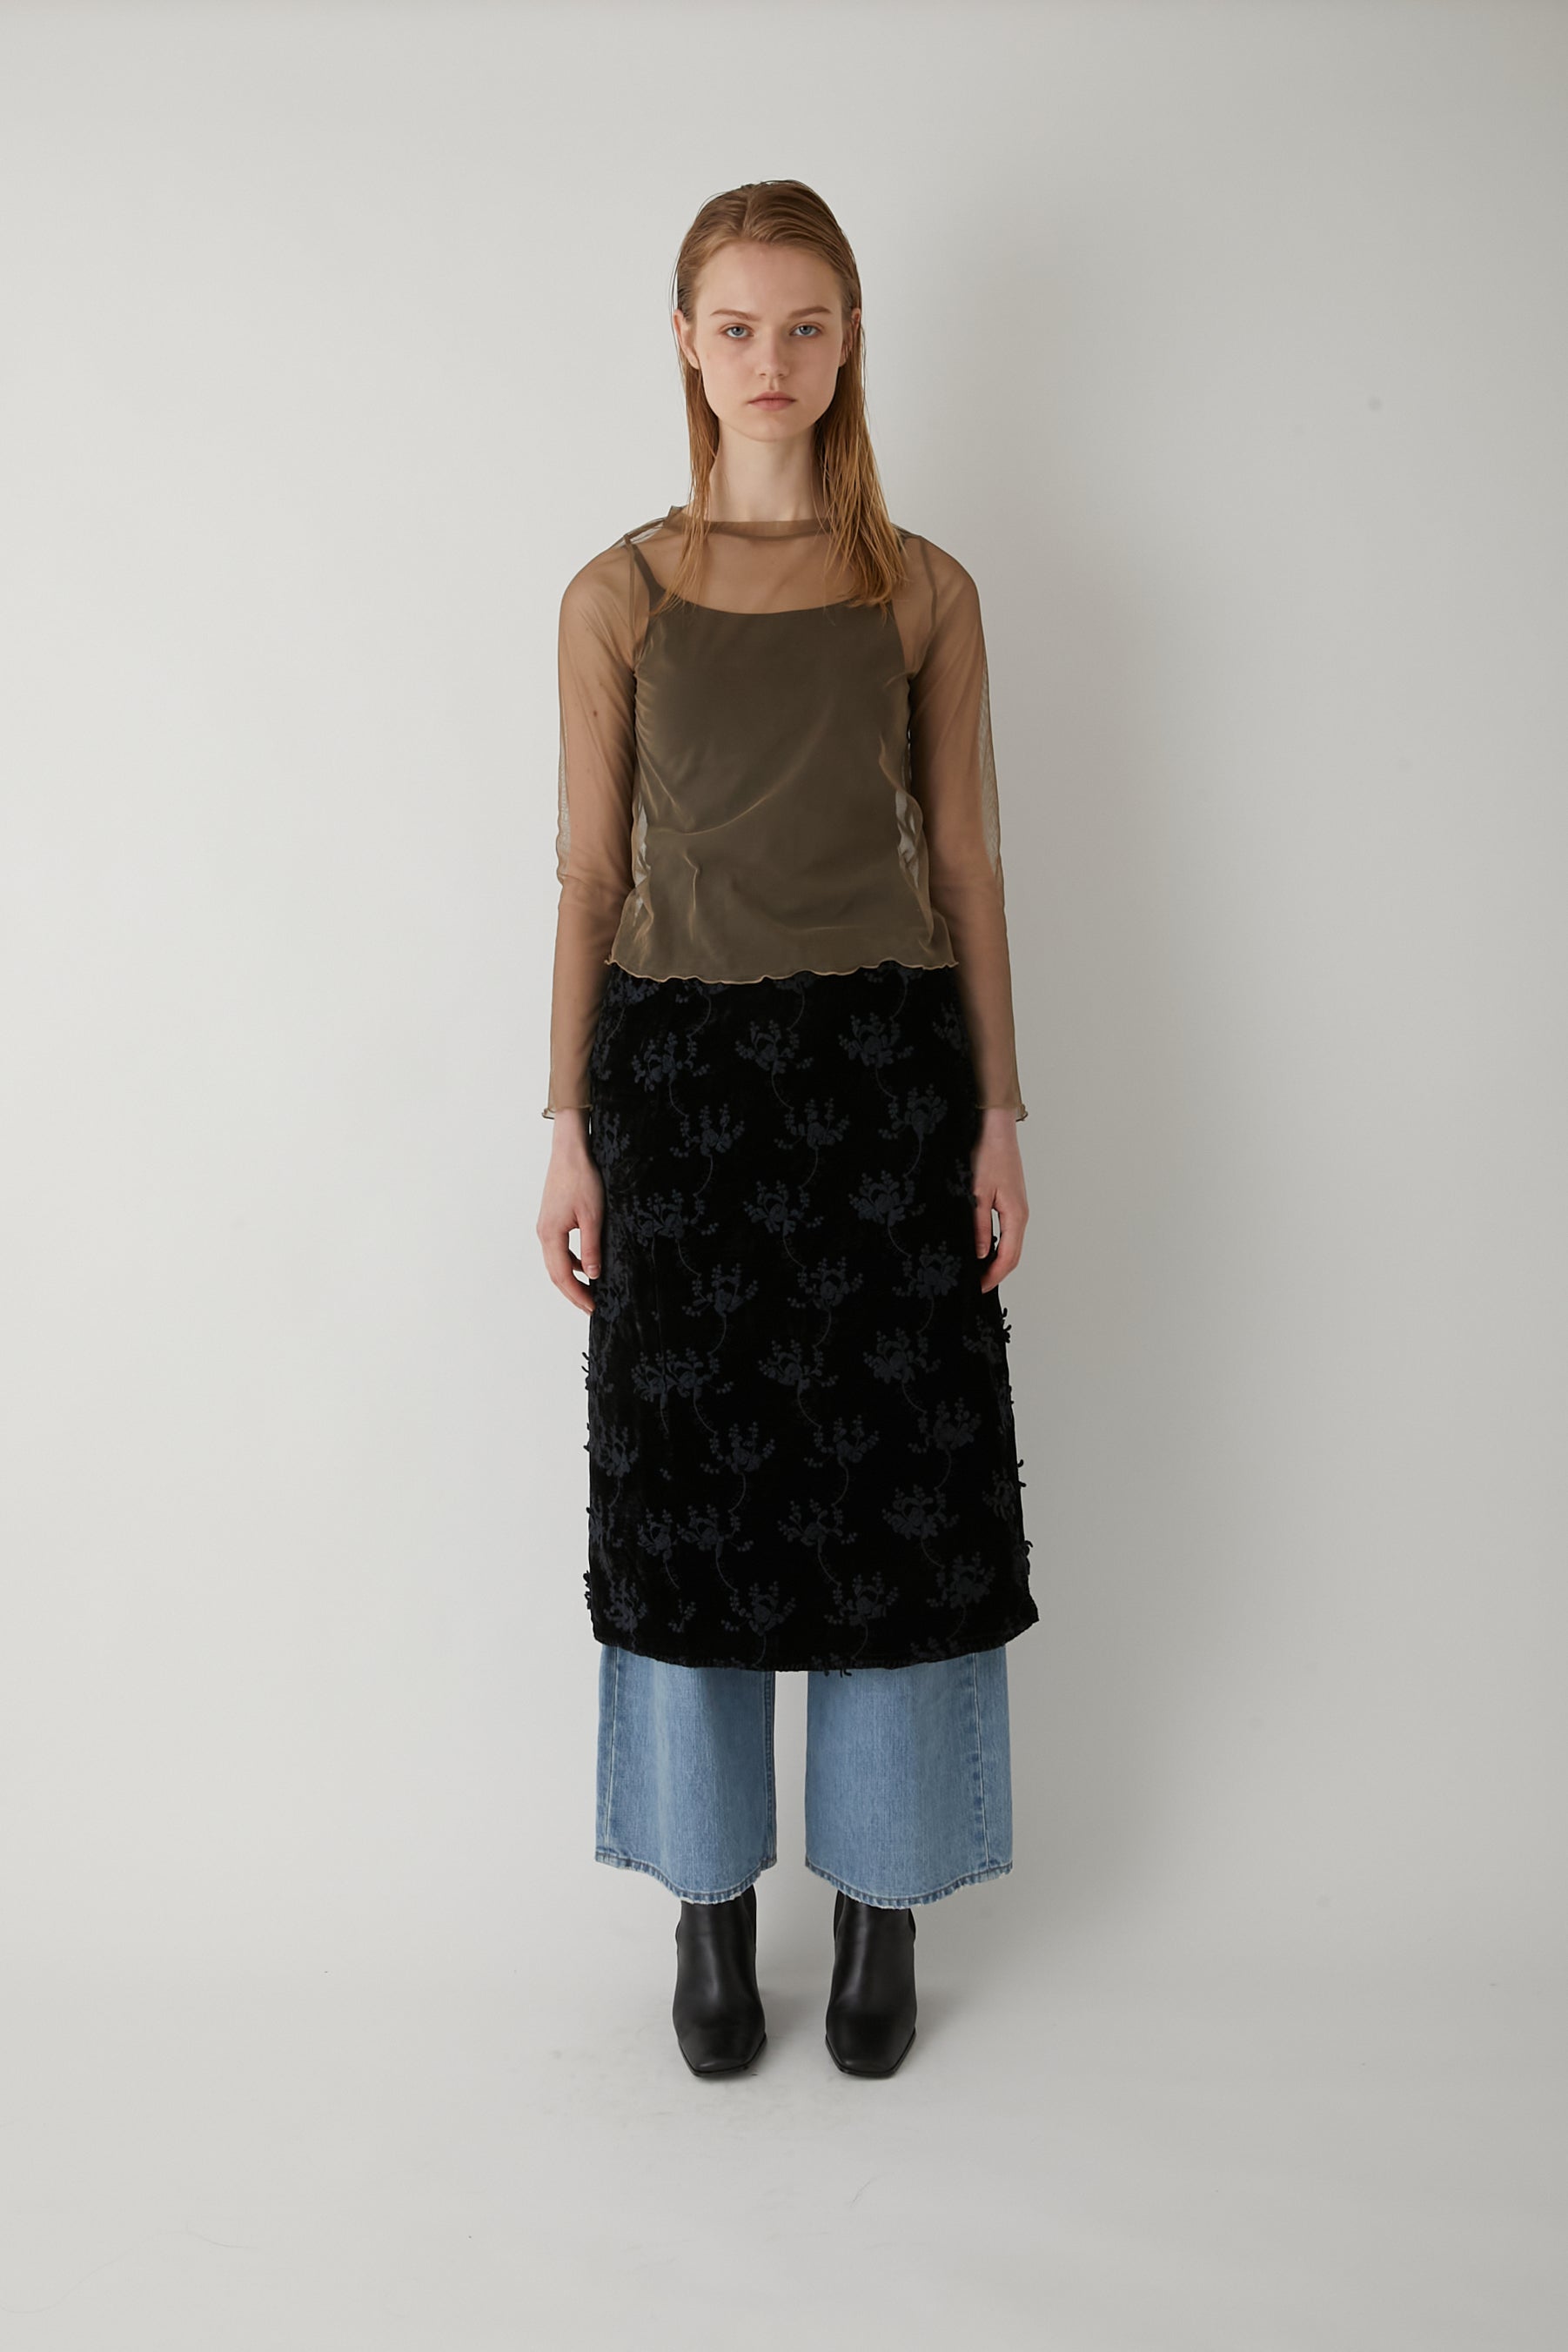 velvet 3D embroidery quilting skirt │ BLACK